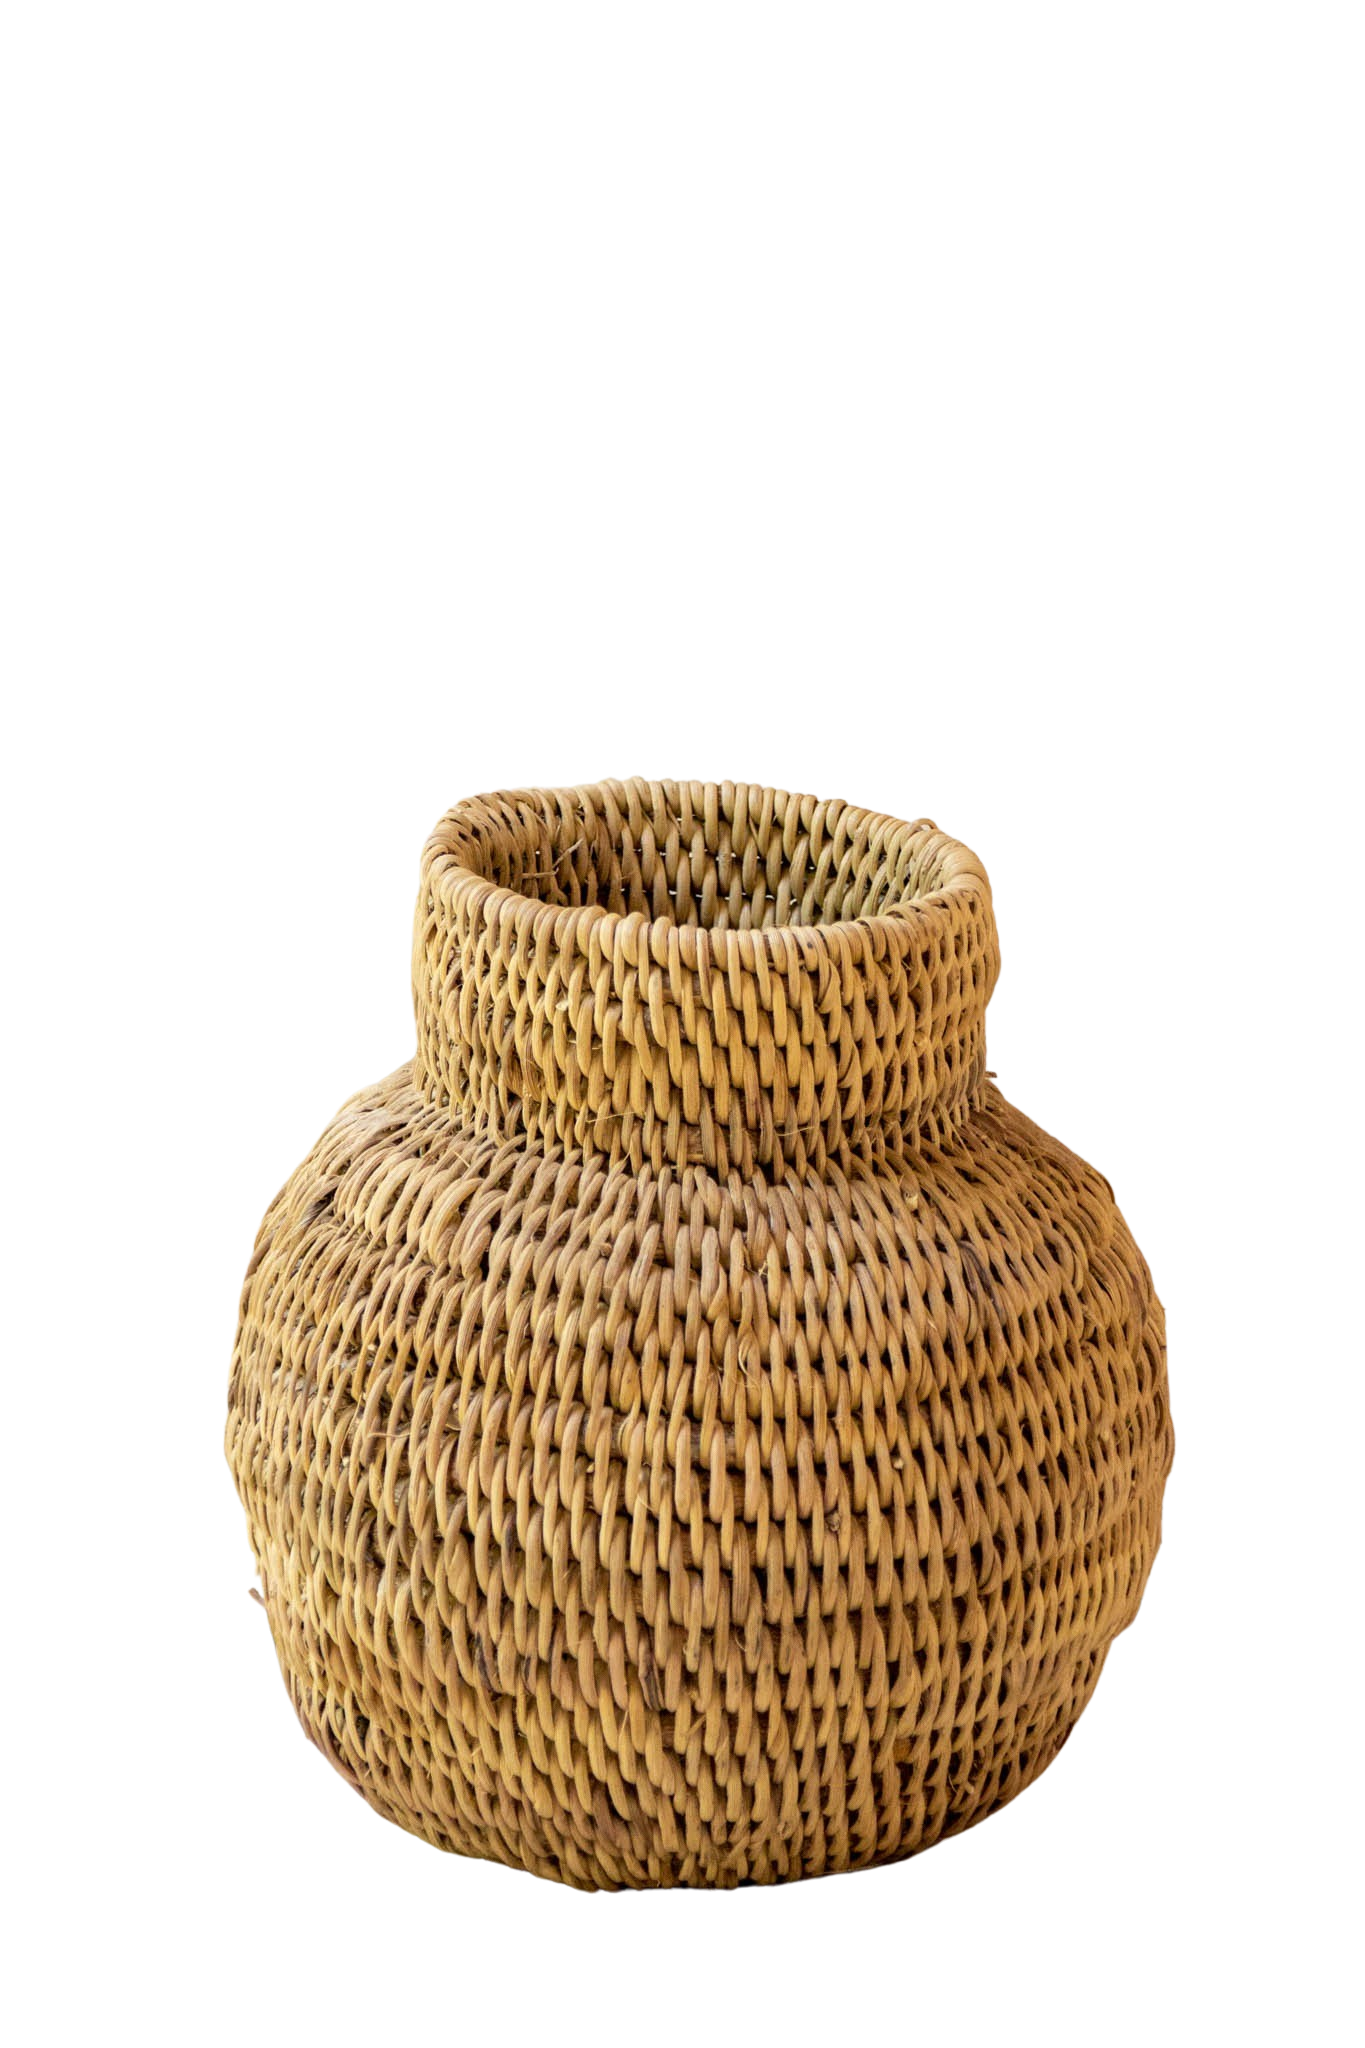 Buhera S African basket